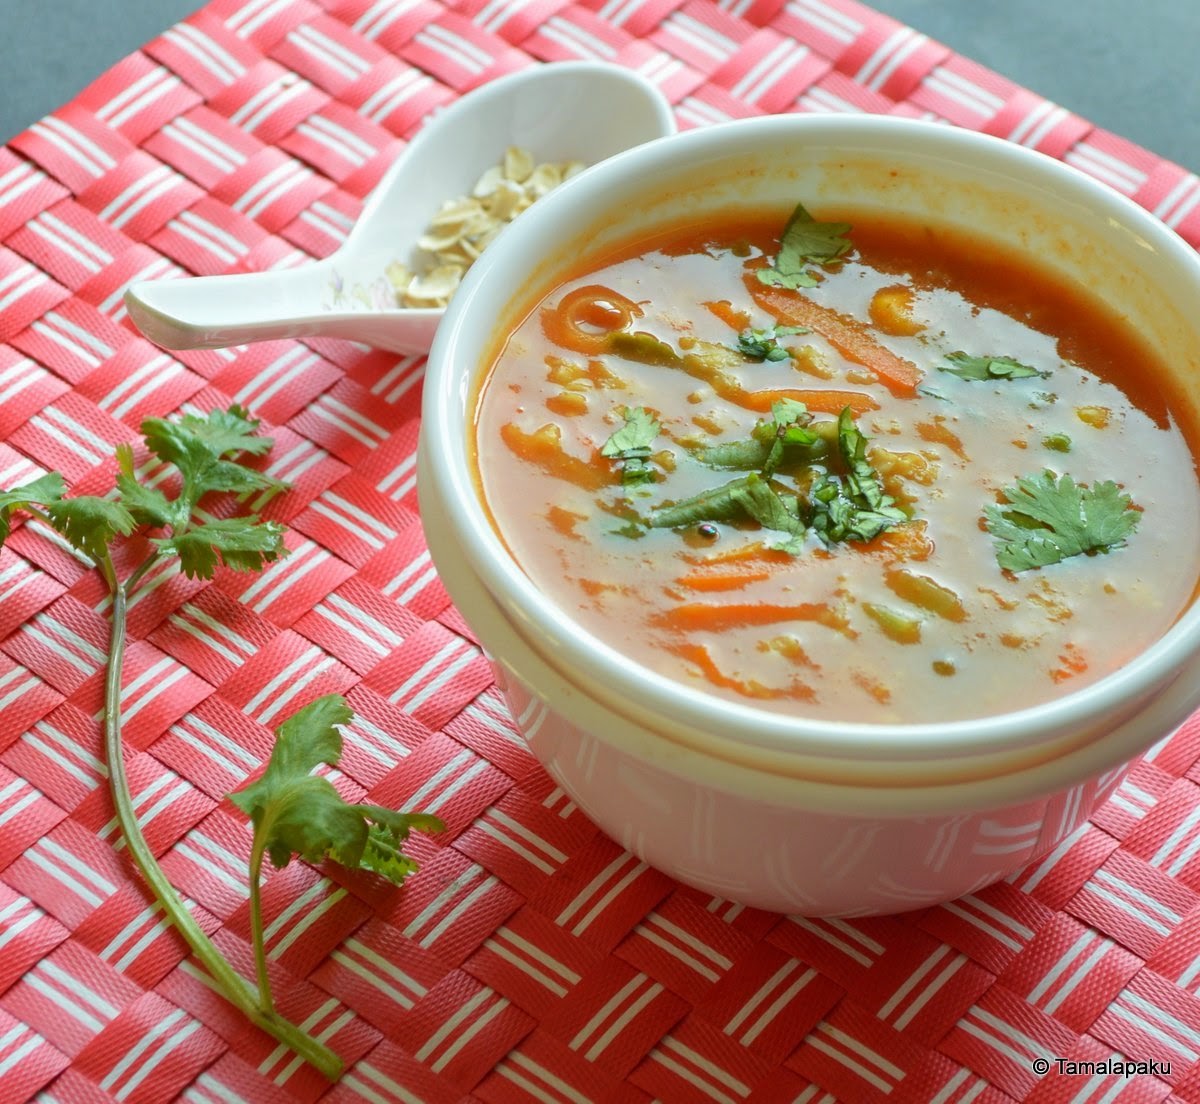 Oats-Vegetable Soup